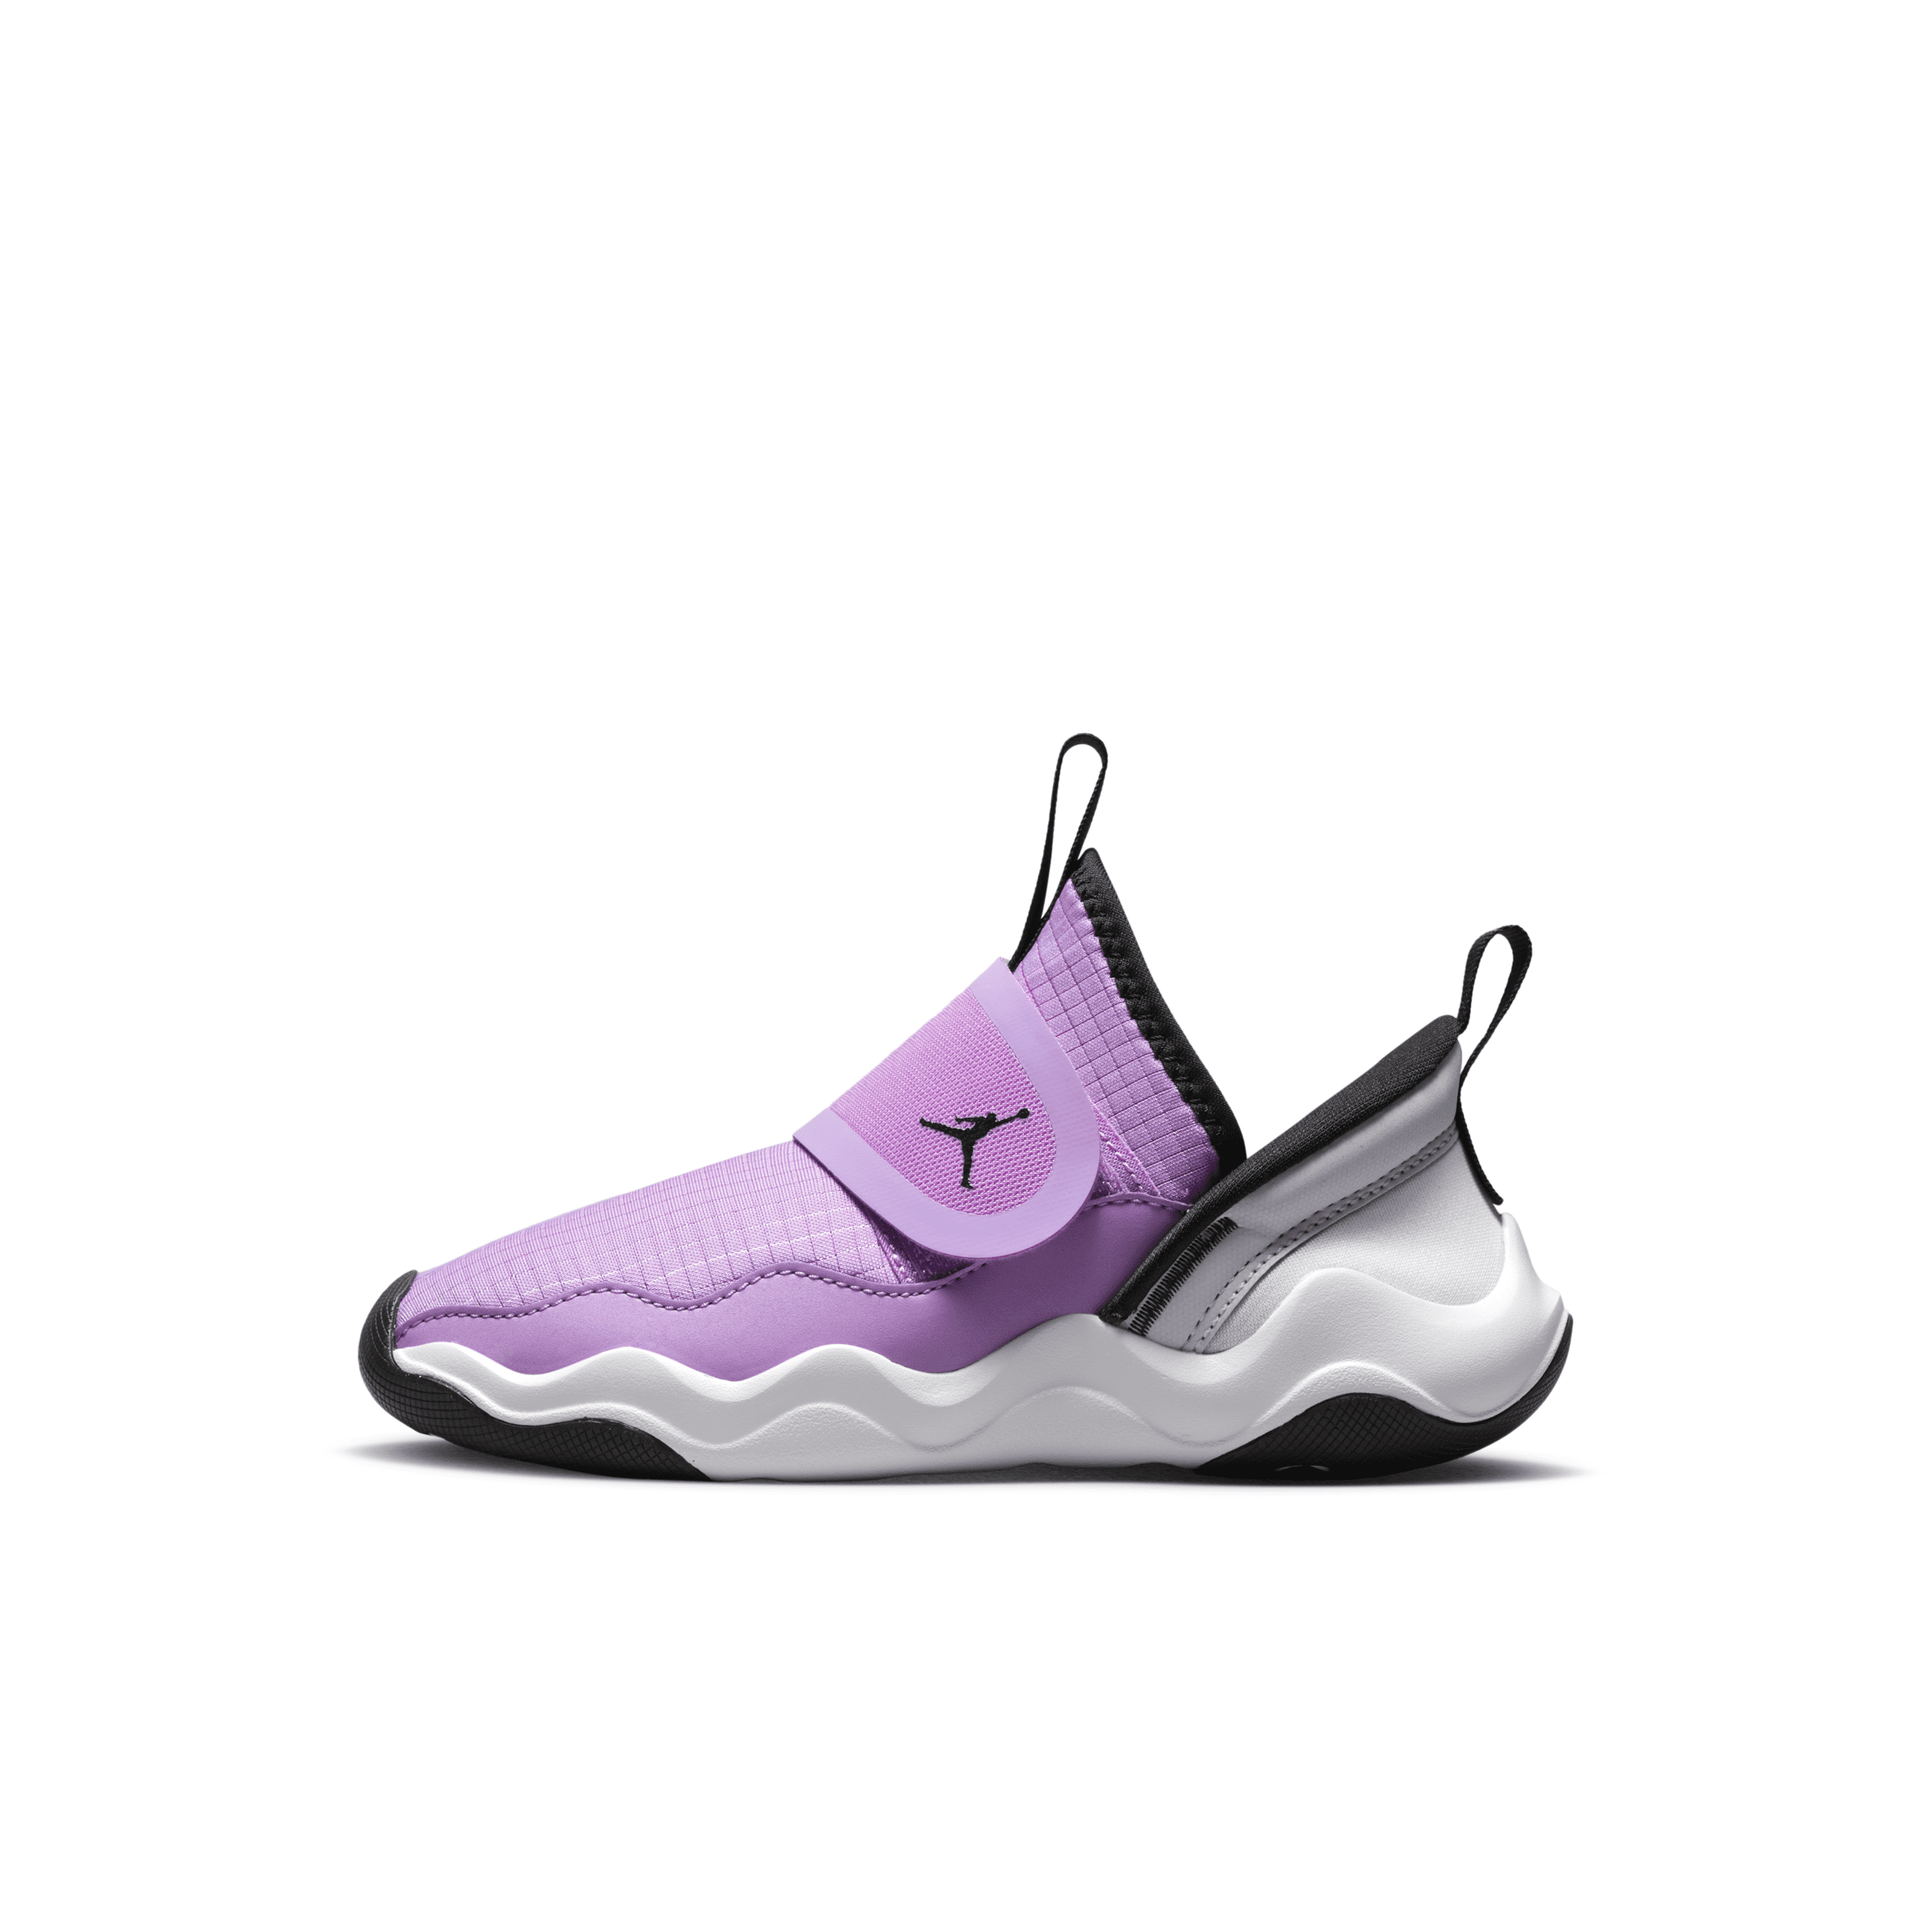 Jordan 23/7 Little Kids' Shoes In Purple